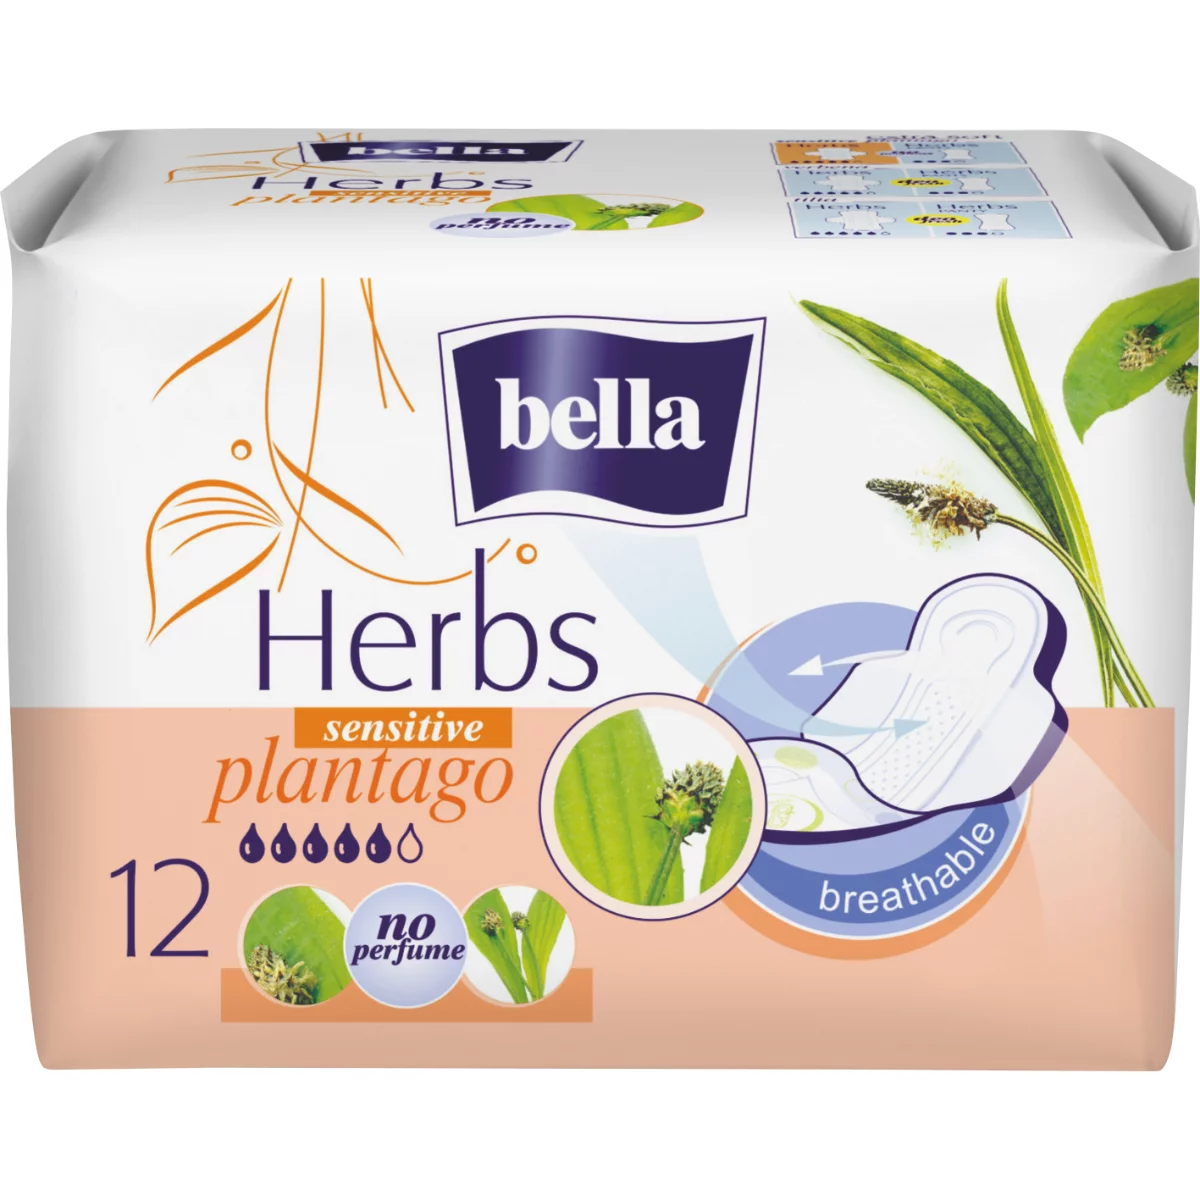 Bella Herbs egészségügyi betét 12db Lándzsás Útifű